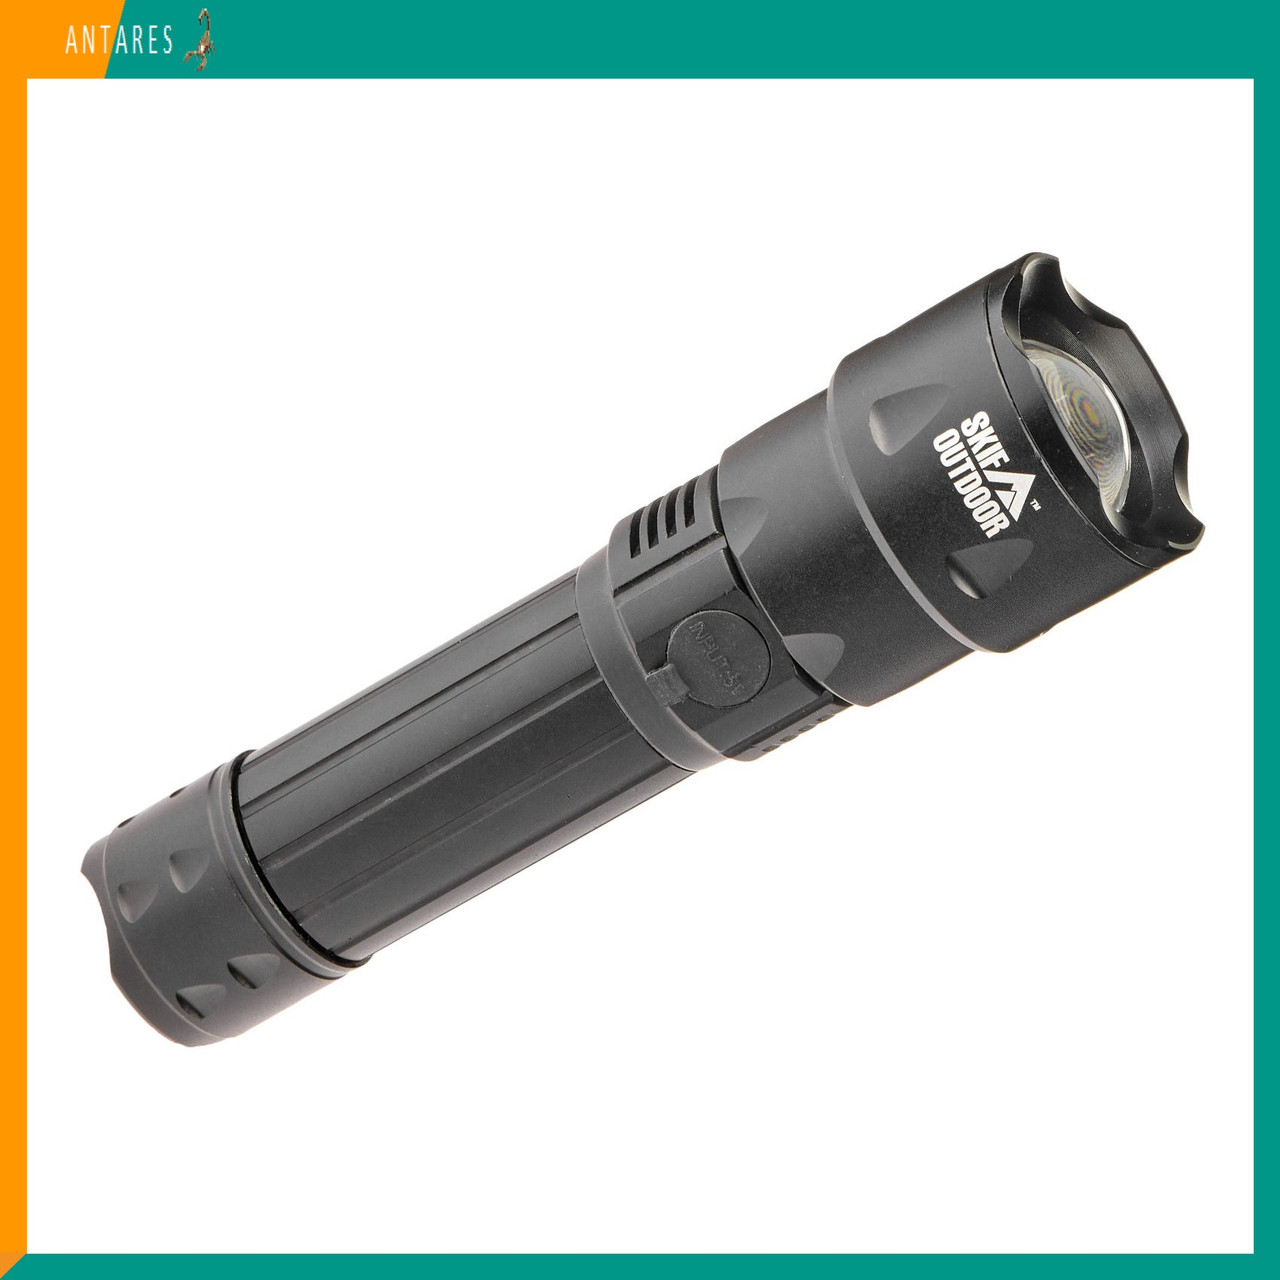 Ліхтар туристичний Skif Outdoor Focus II (HQ-202) ручний світлодіодний акумулятор фокусування бризкозахист Скіф Фокус 2